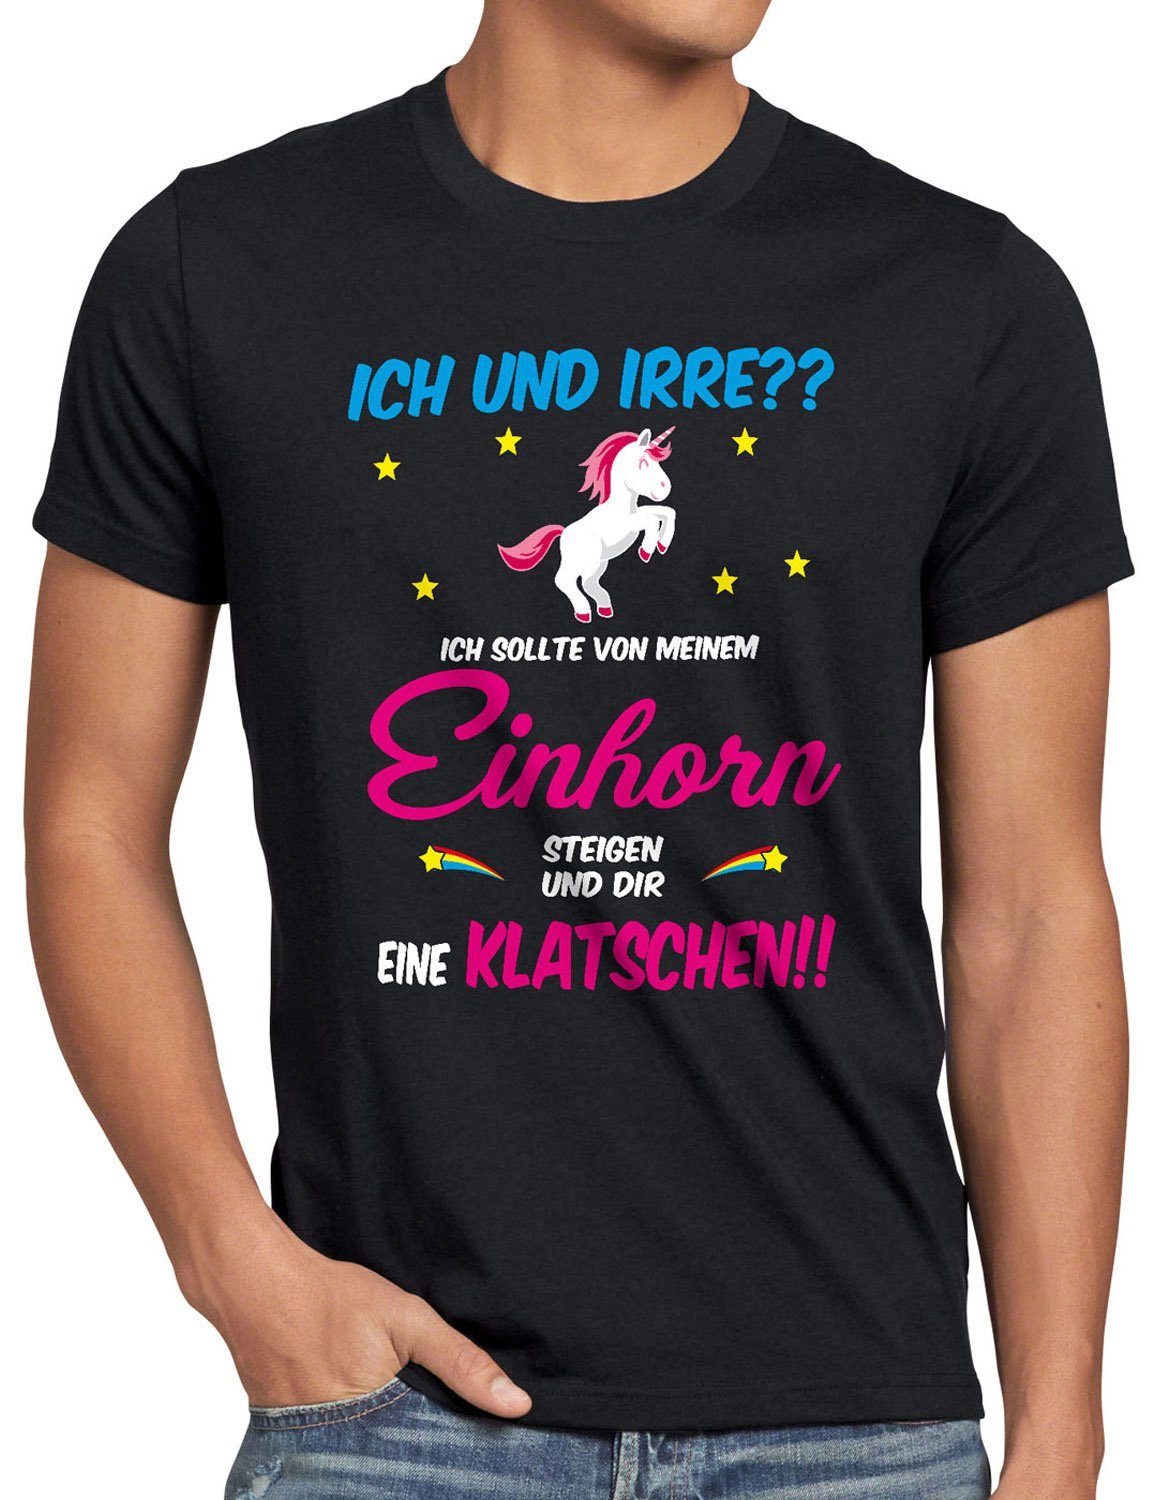 Print-Shirt schwarz und Einhorn Einhörner T-Shirt klatschen absteigen Fun Herren style3 IRRE? ICH Spruch